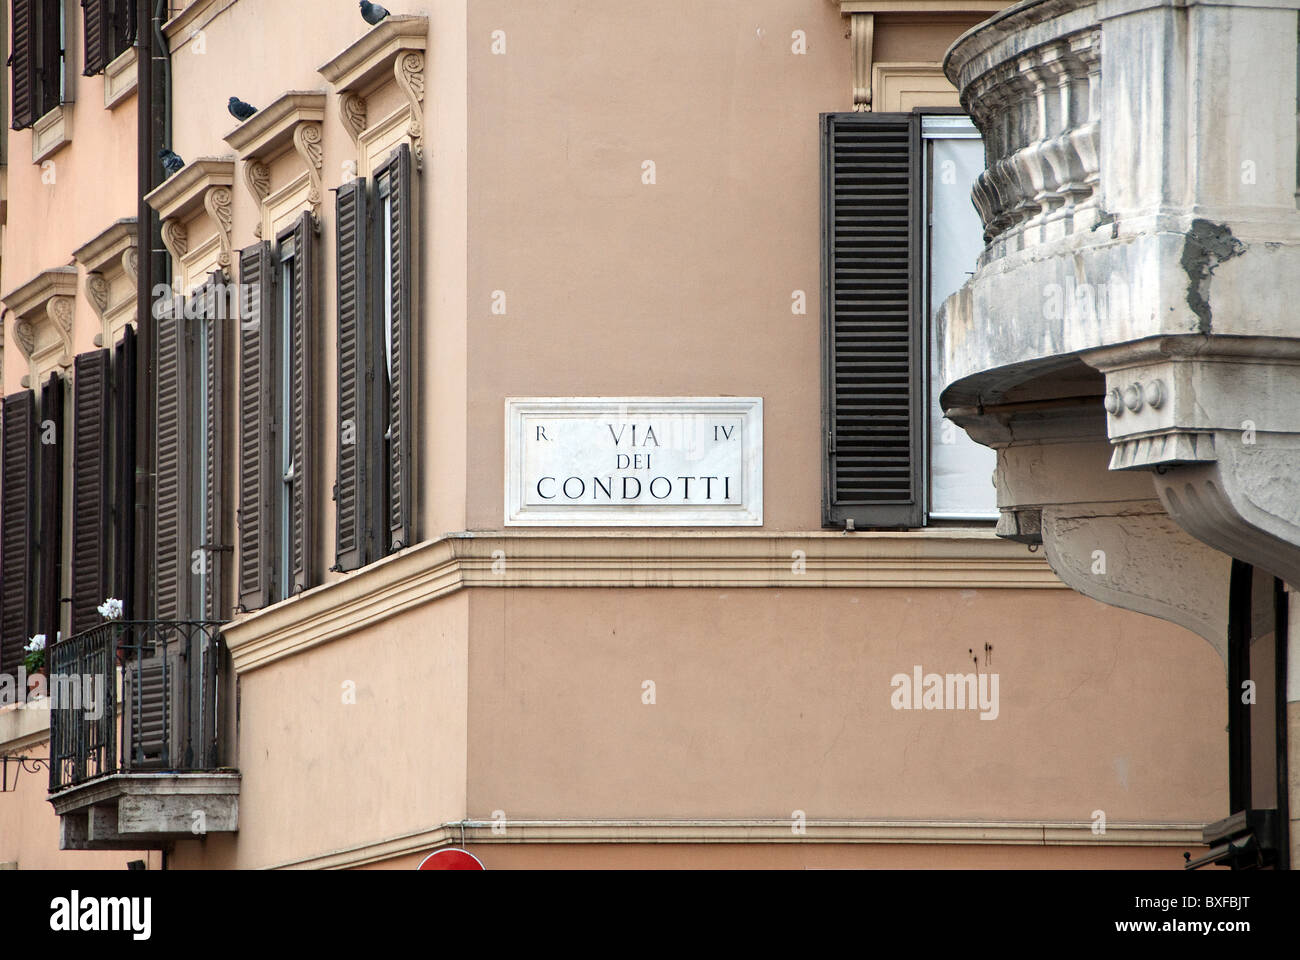 Street sign for Via dei Condotti Stock Photo